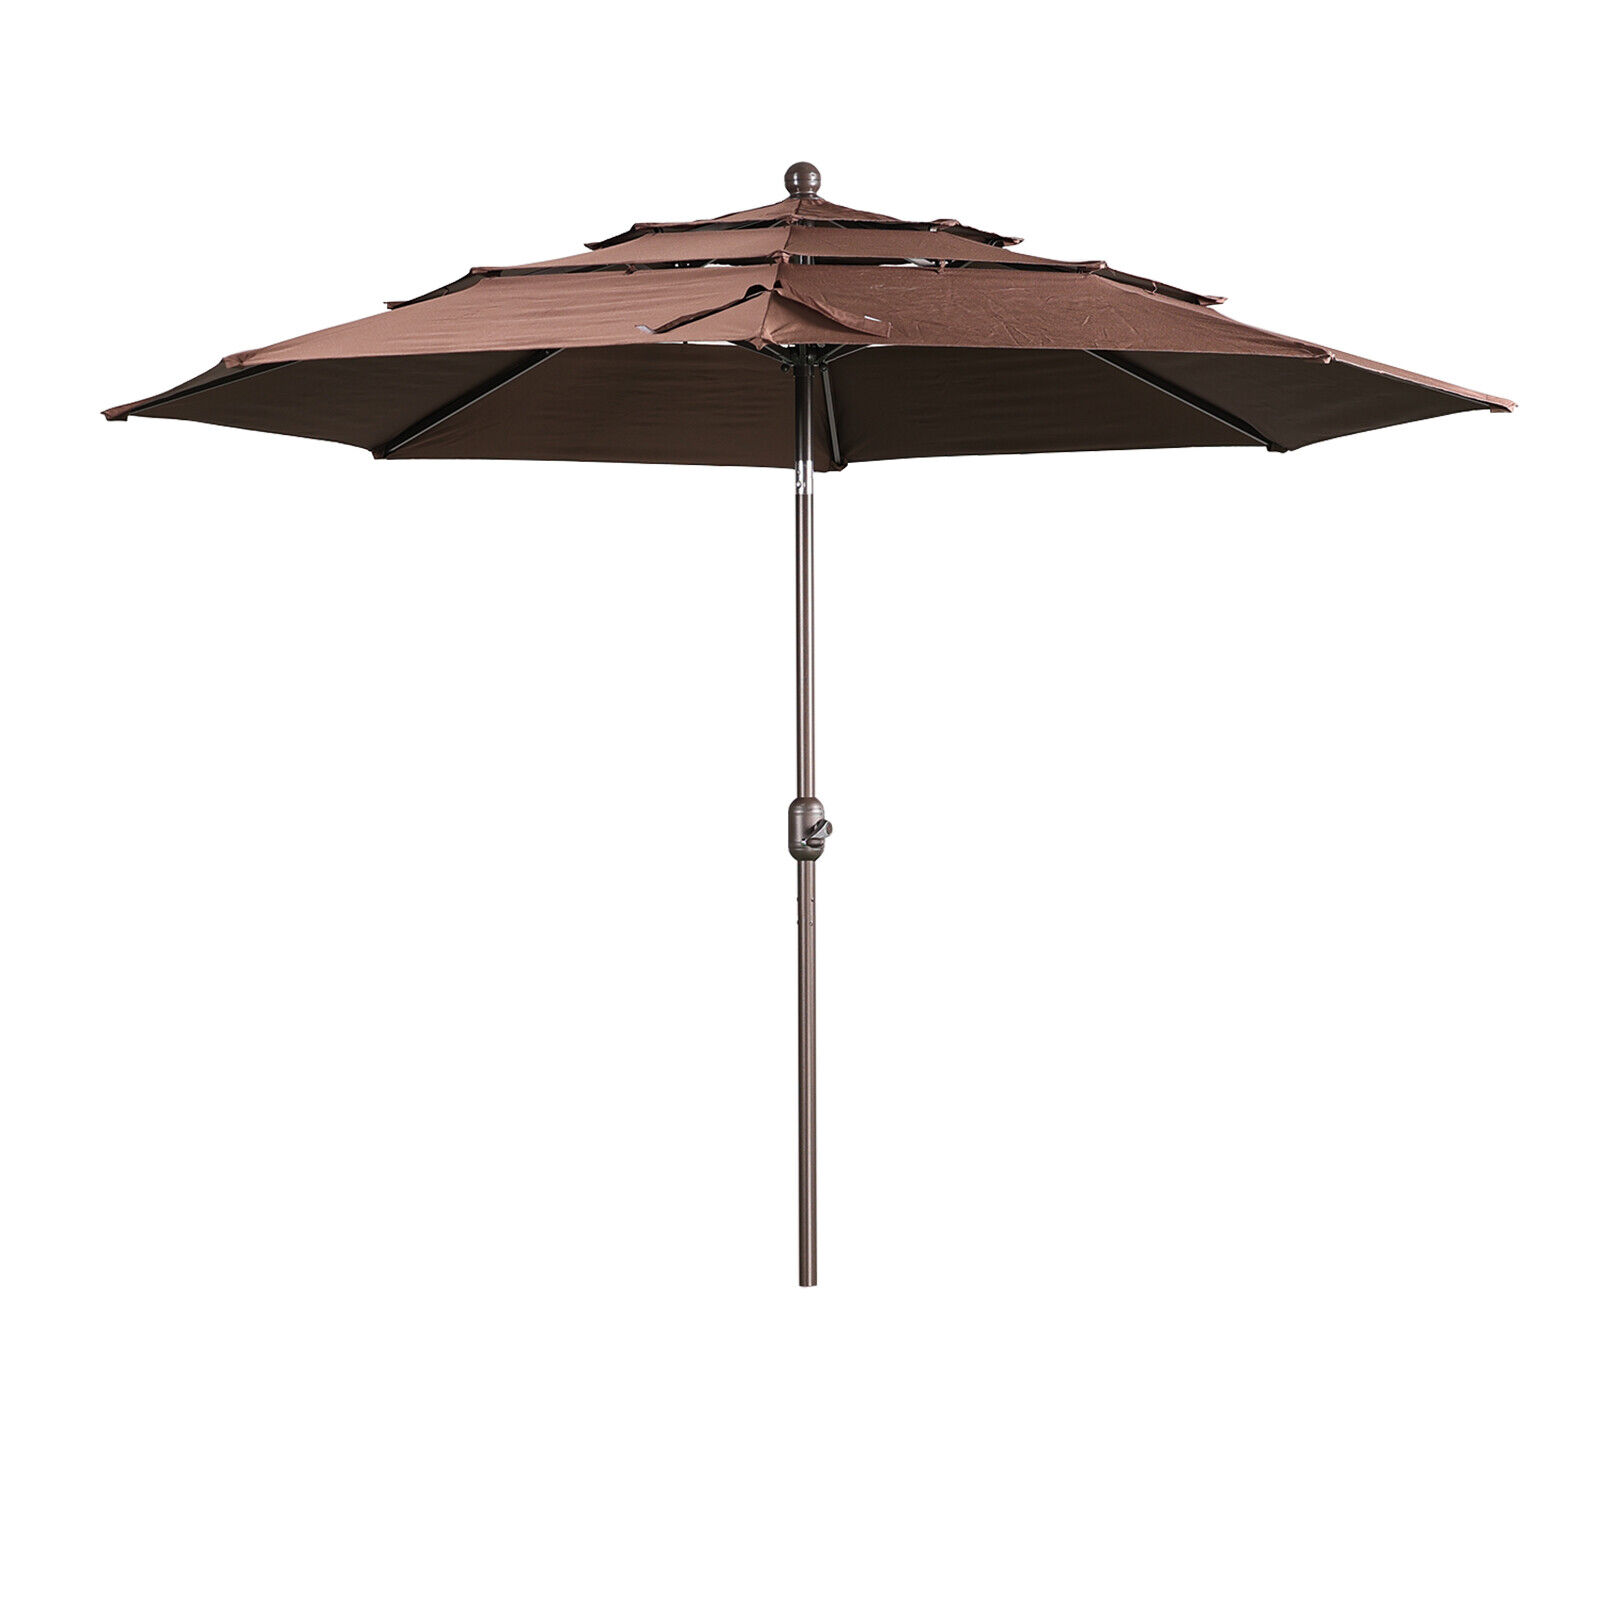 Aoodor 10ft 3 Tier Patio Umbrella Dining Table Outdoor Market Umbrella w/Crank